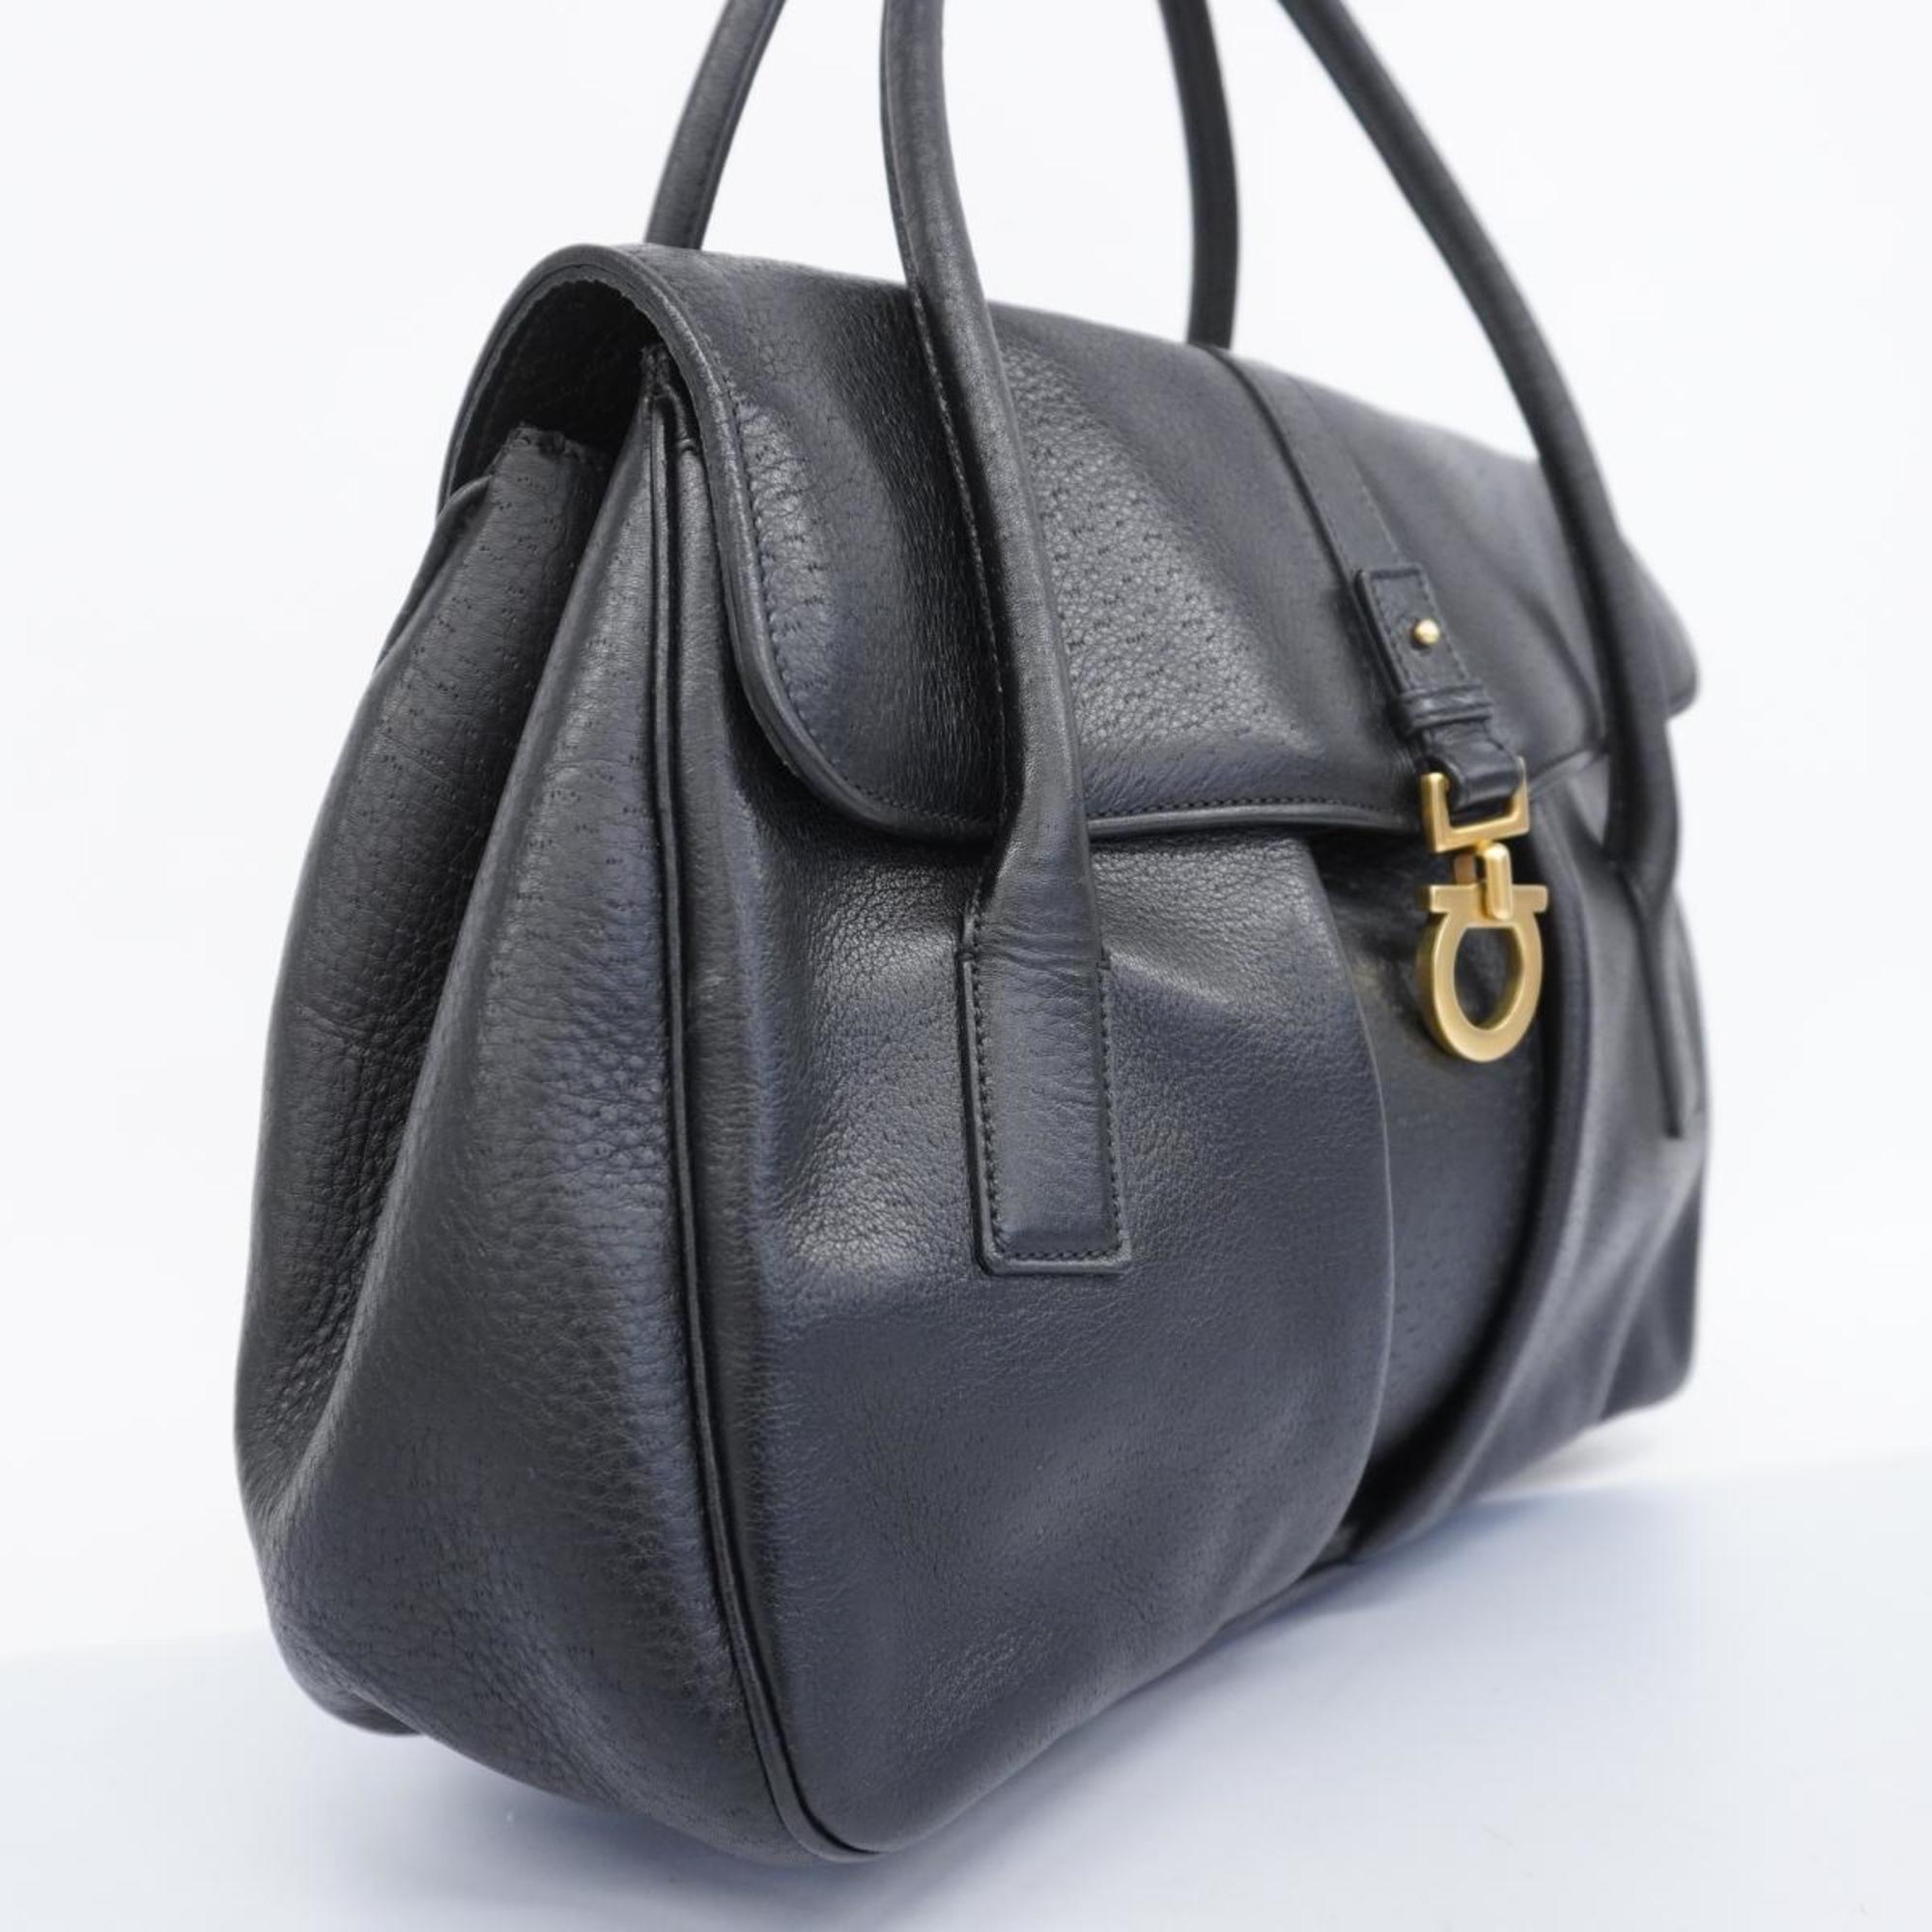 Salvatore Ferragamo Tote Bag Gancini Leather Black Women's